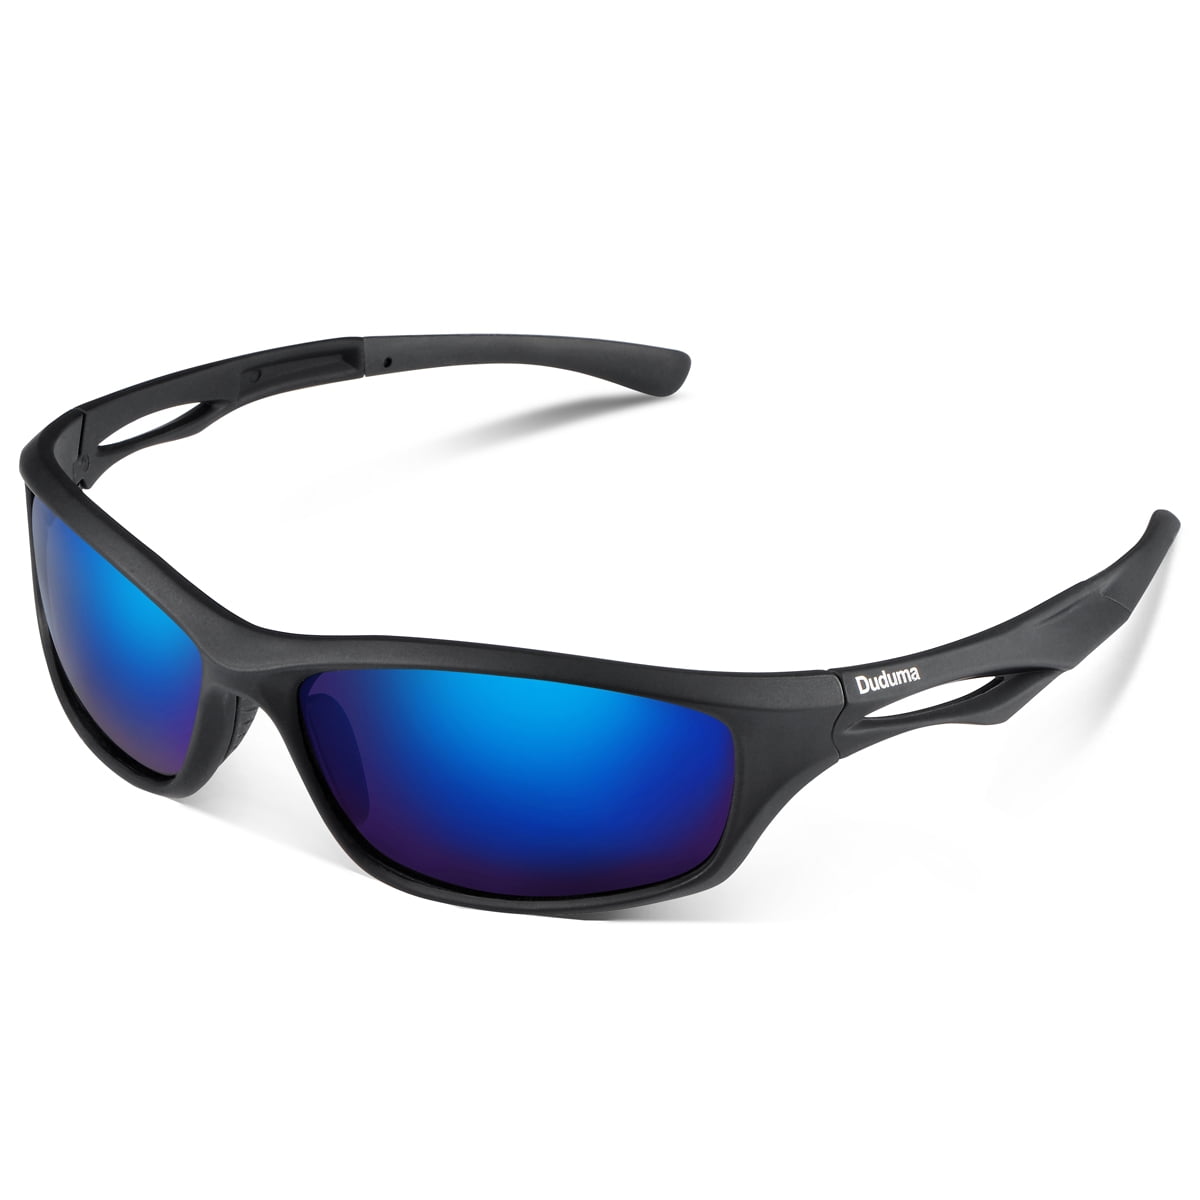 Outdoors Sports Fishing Exercise Black W/ Blue Lens Duduma Polarized Sunglasses 